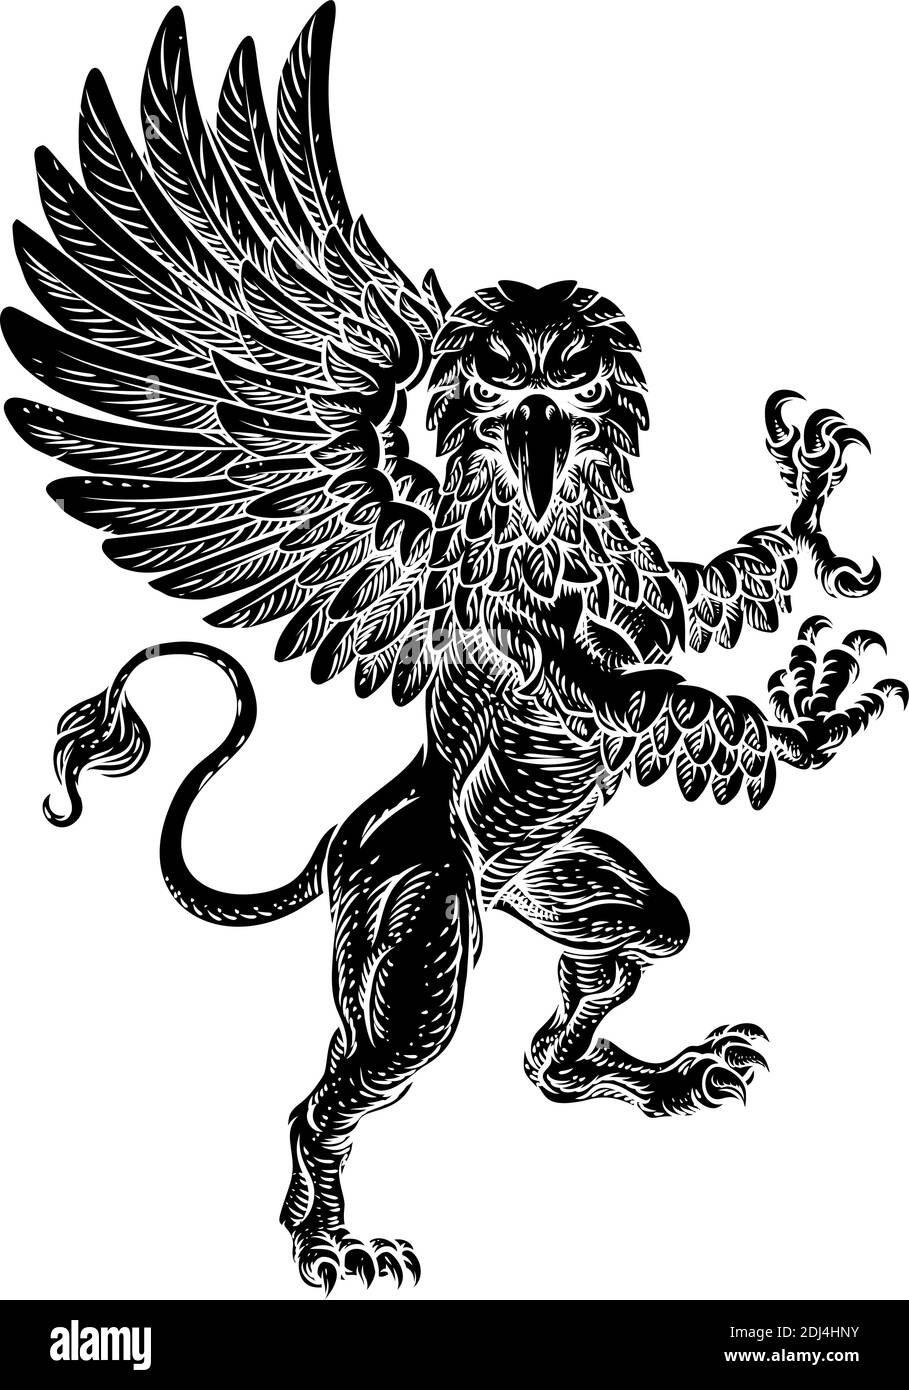 Griffin endémique Gryphon Coat of Arms Crest Mascot Illustration de Vecteur